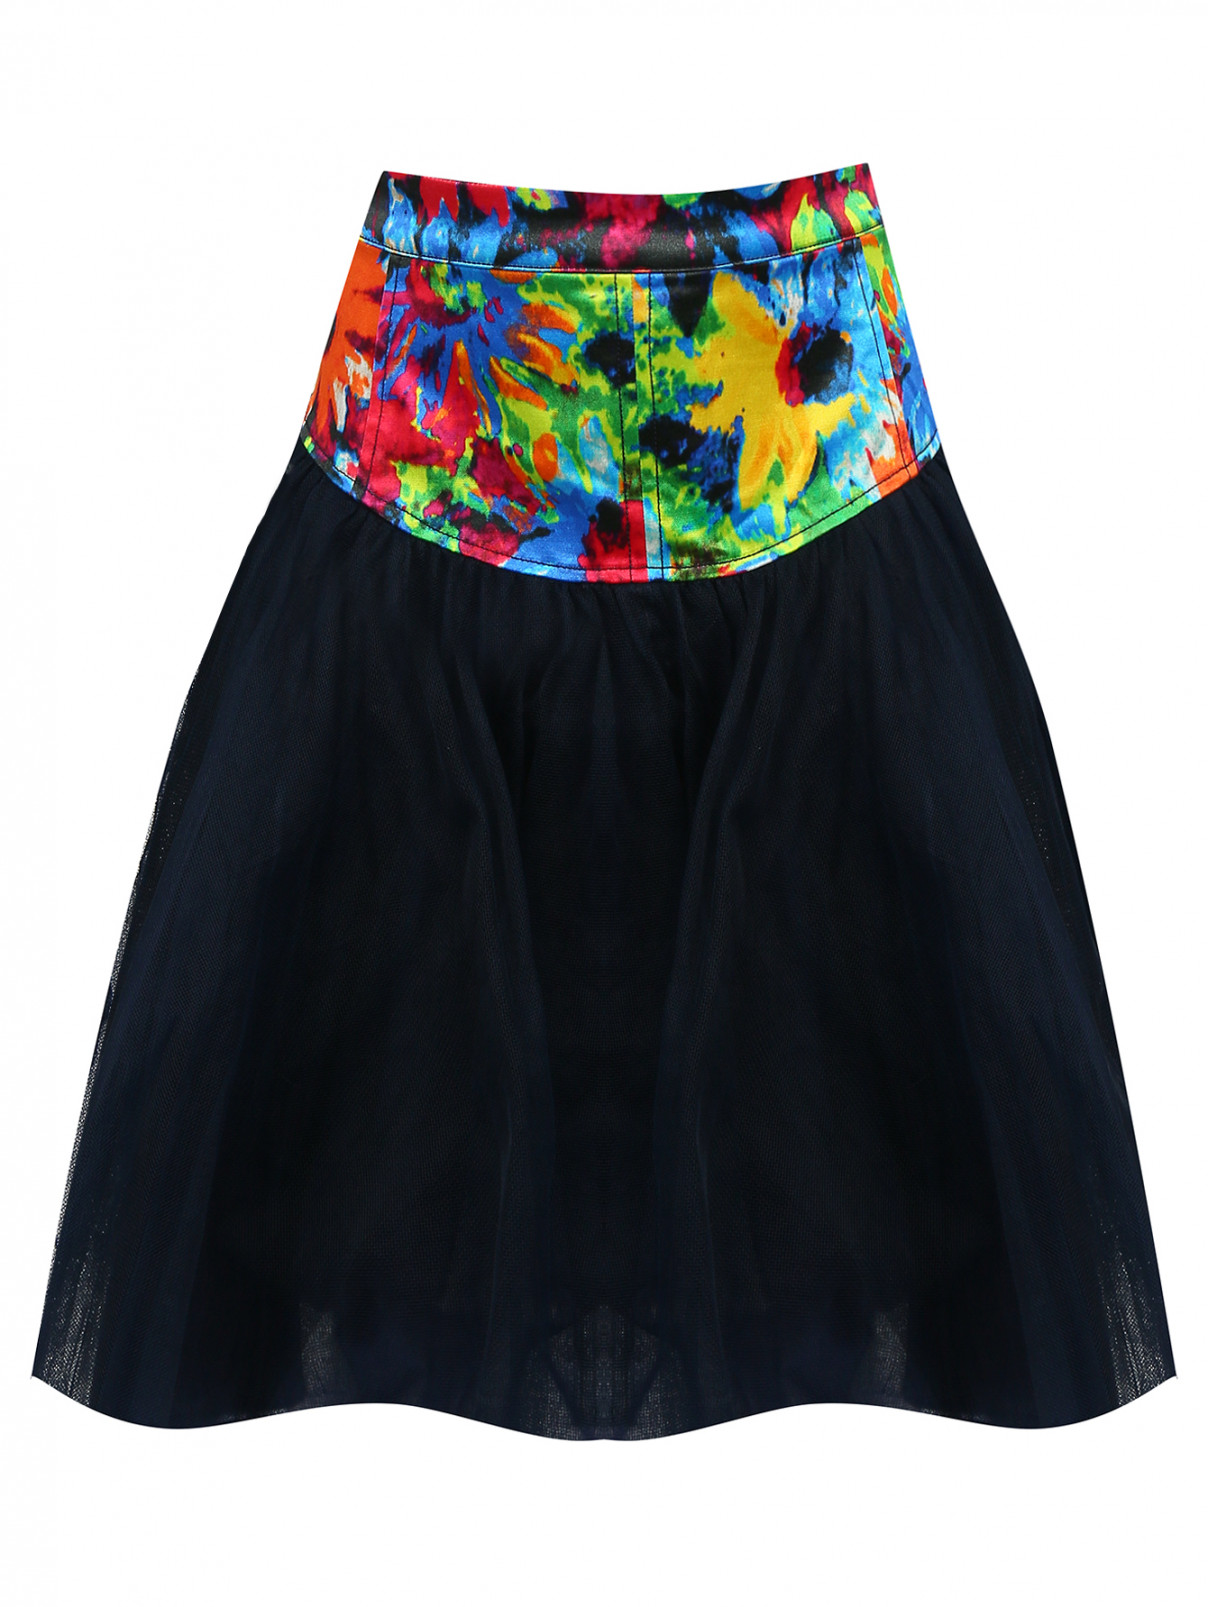 Юбка-пачка с шелковистым поясом Junior Gaultier  –  Общий вид  – Цвет:  Синий